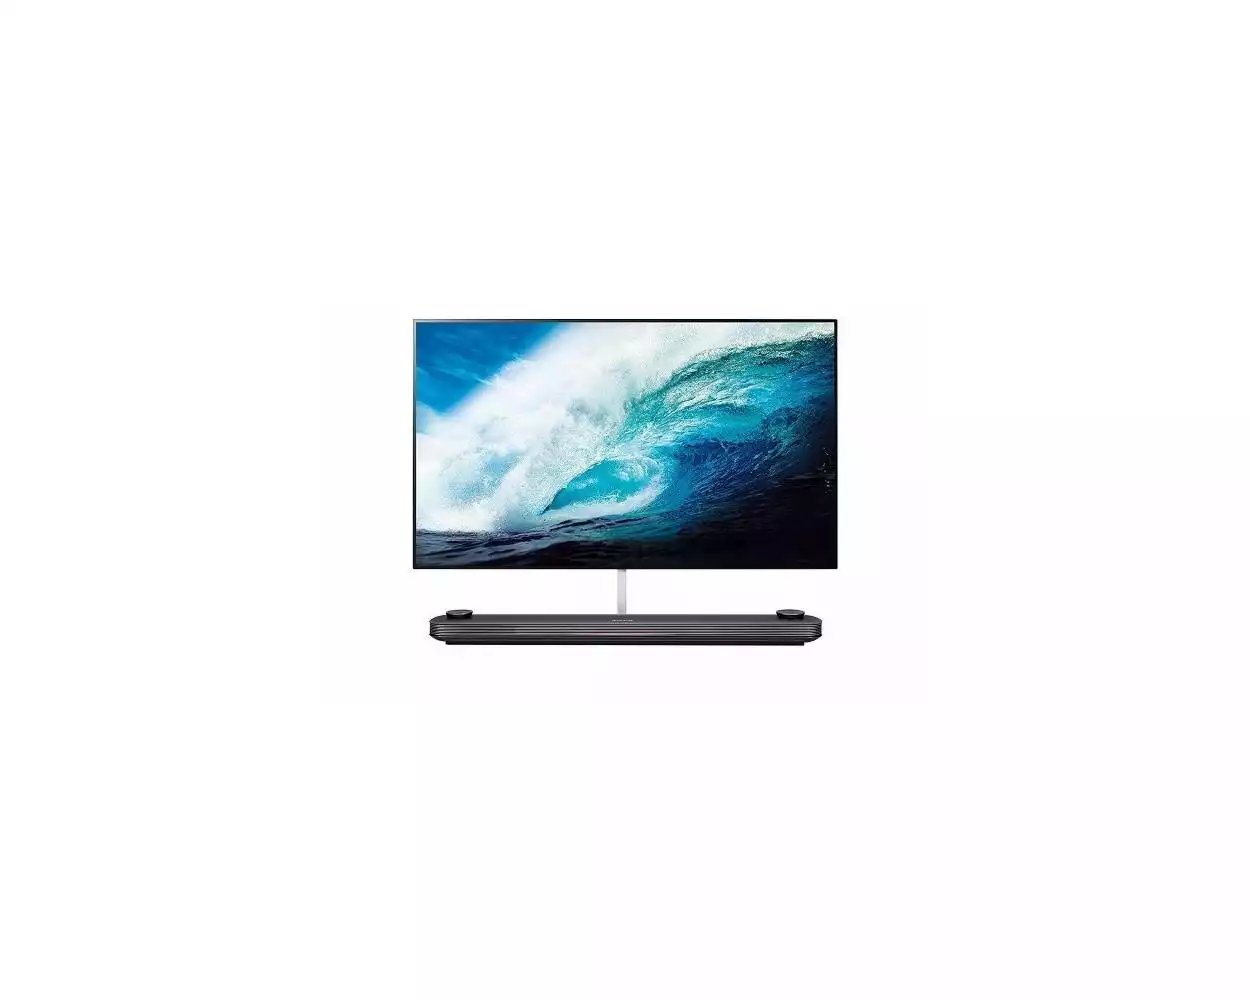 LG Signature OLED Smart TV 77